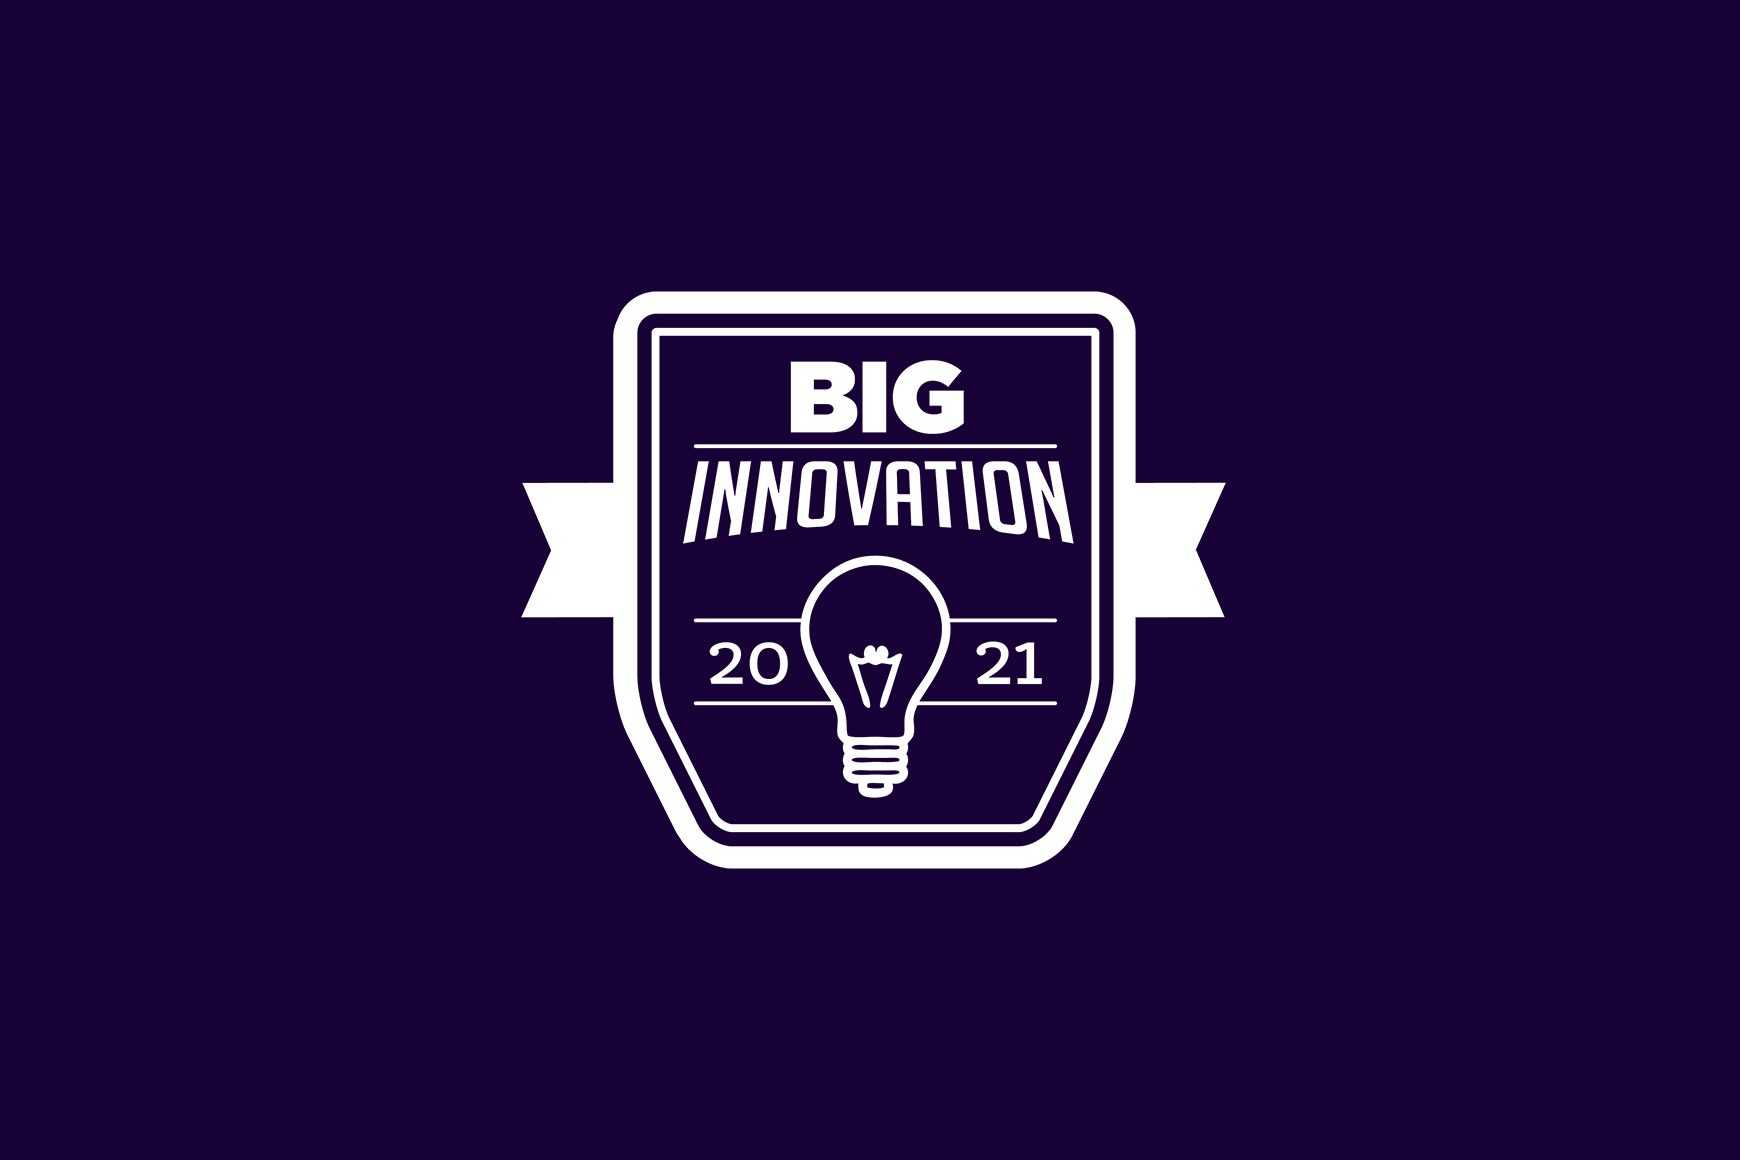 Talkdesk 2021 BIG Innovation Award